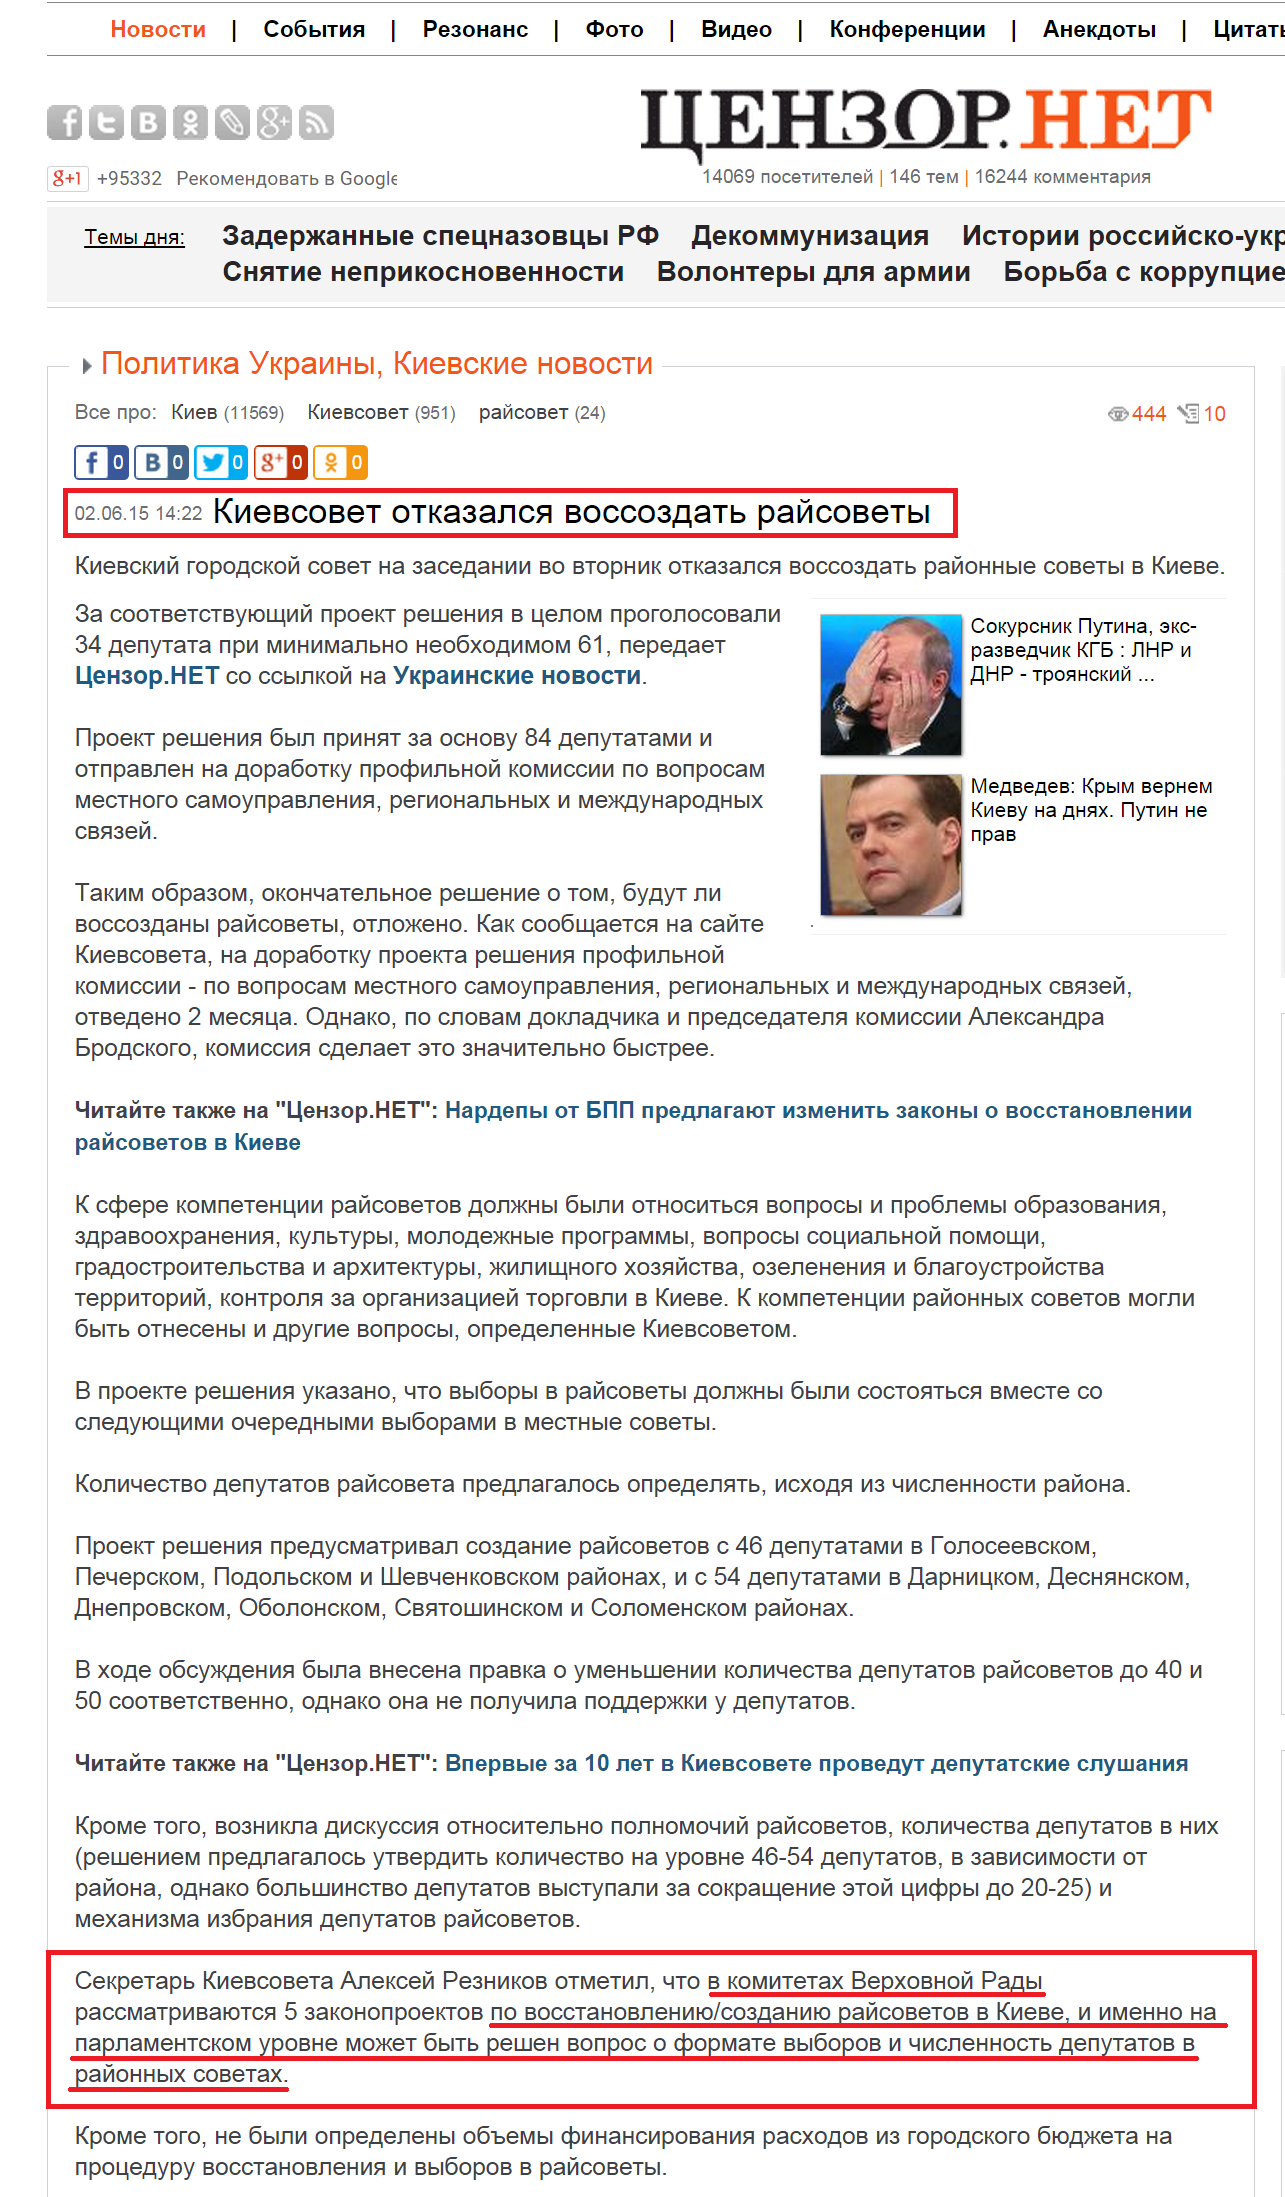 http://censor.net.ua/news/338500/kievsovet_otkazalsya_vossozdat_rayisovety